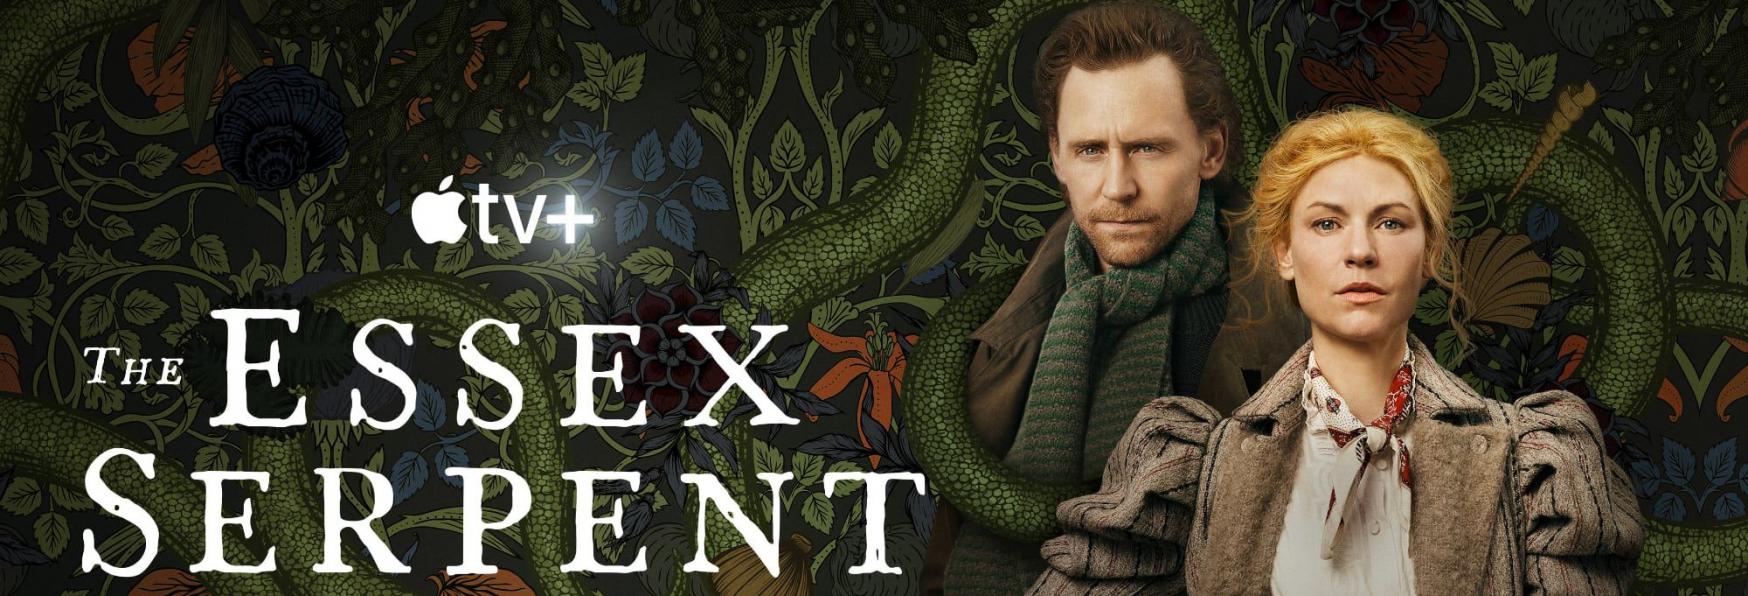 The Essex Serpent: Apple TV+ rilascia il Trailer Ufficiale della nuova Serie TV con Tom Hiddleston